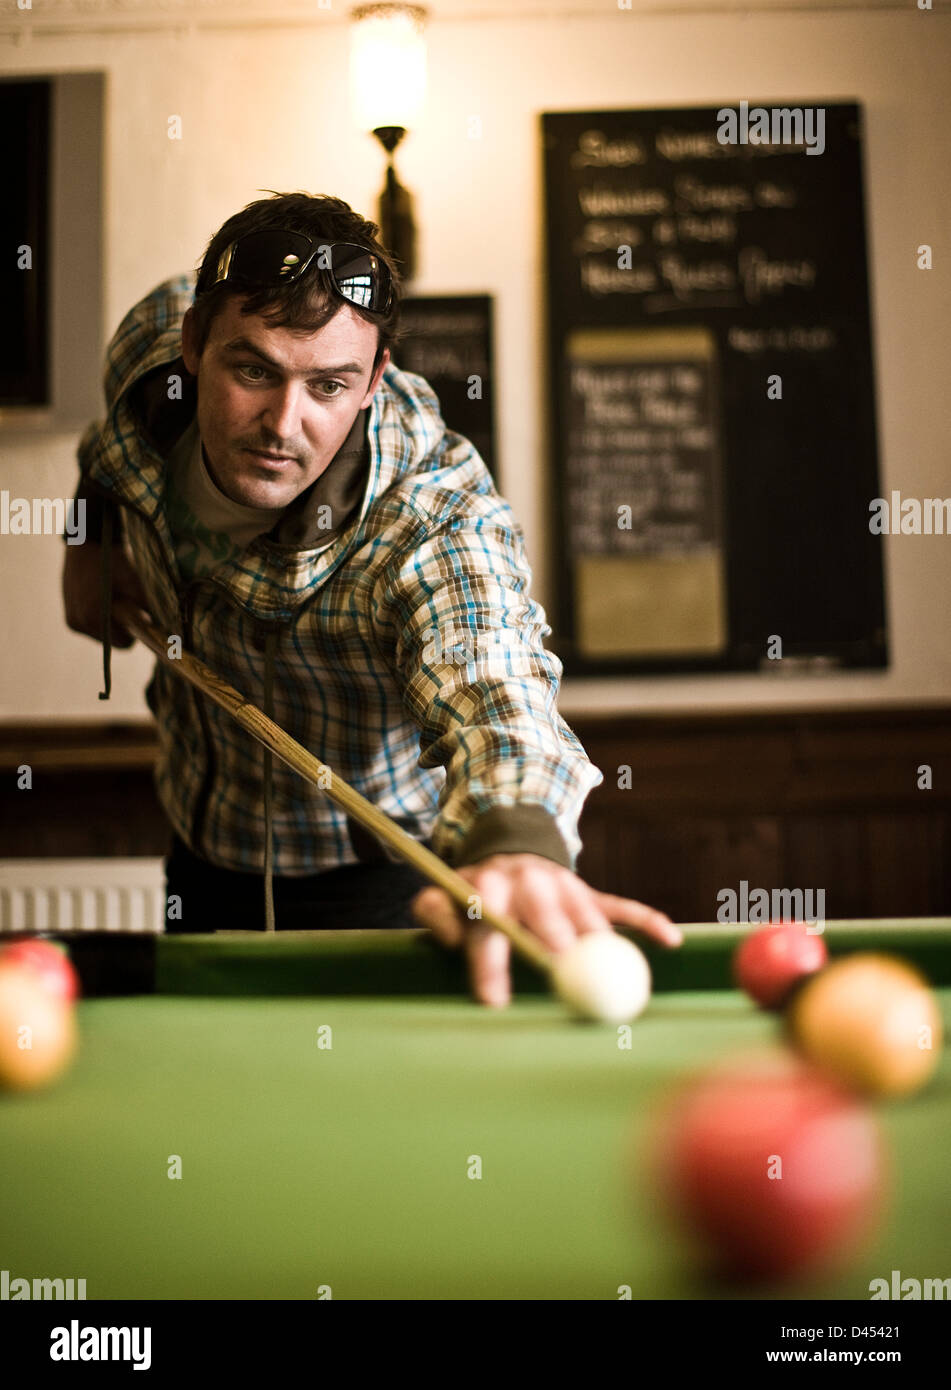 Au joueur de billard table de billard, St Agnes, Cornwall, UK Banque D'Images